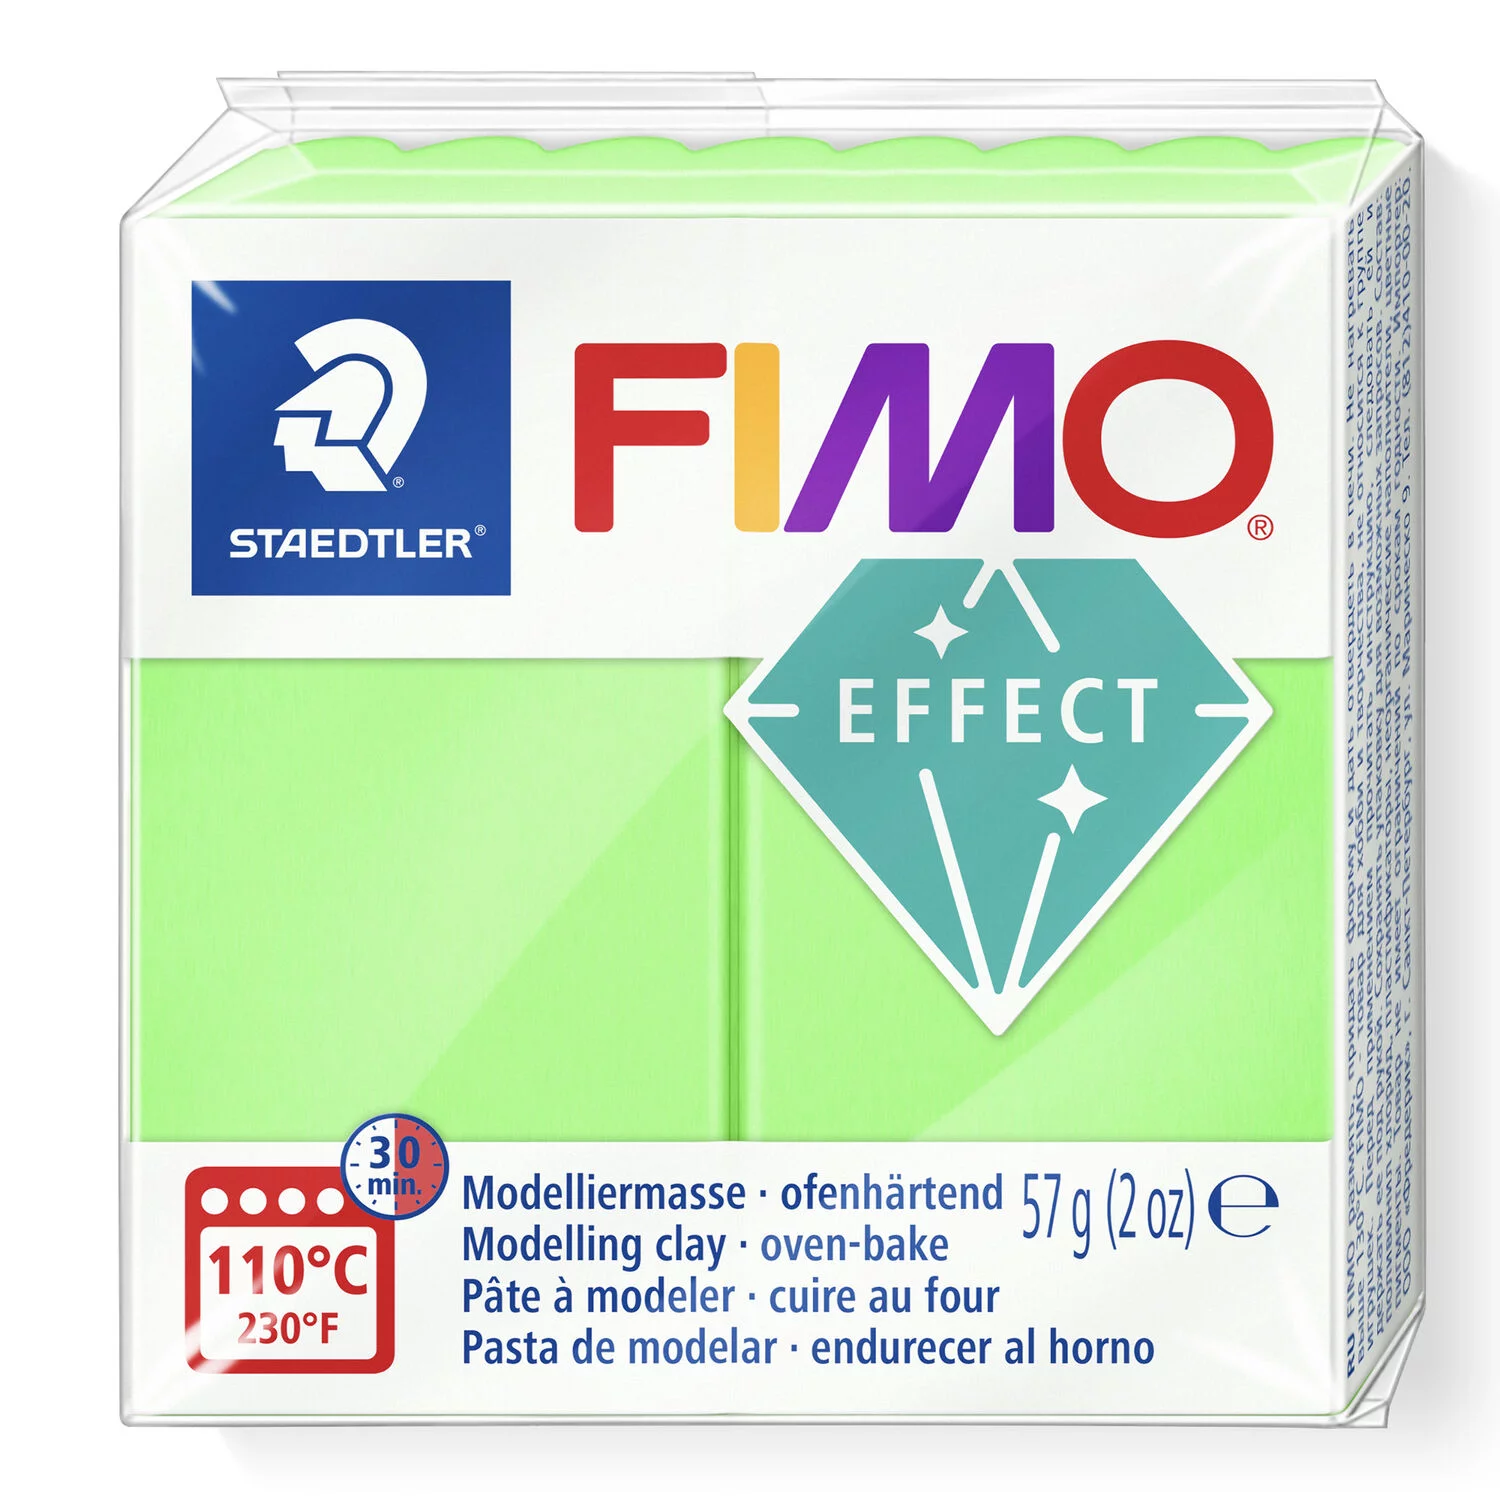 STAEDTLER 8010-501 - Fimo effect Neon ofenhärtende Modelliermasse, 57g, neon grün